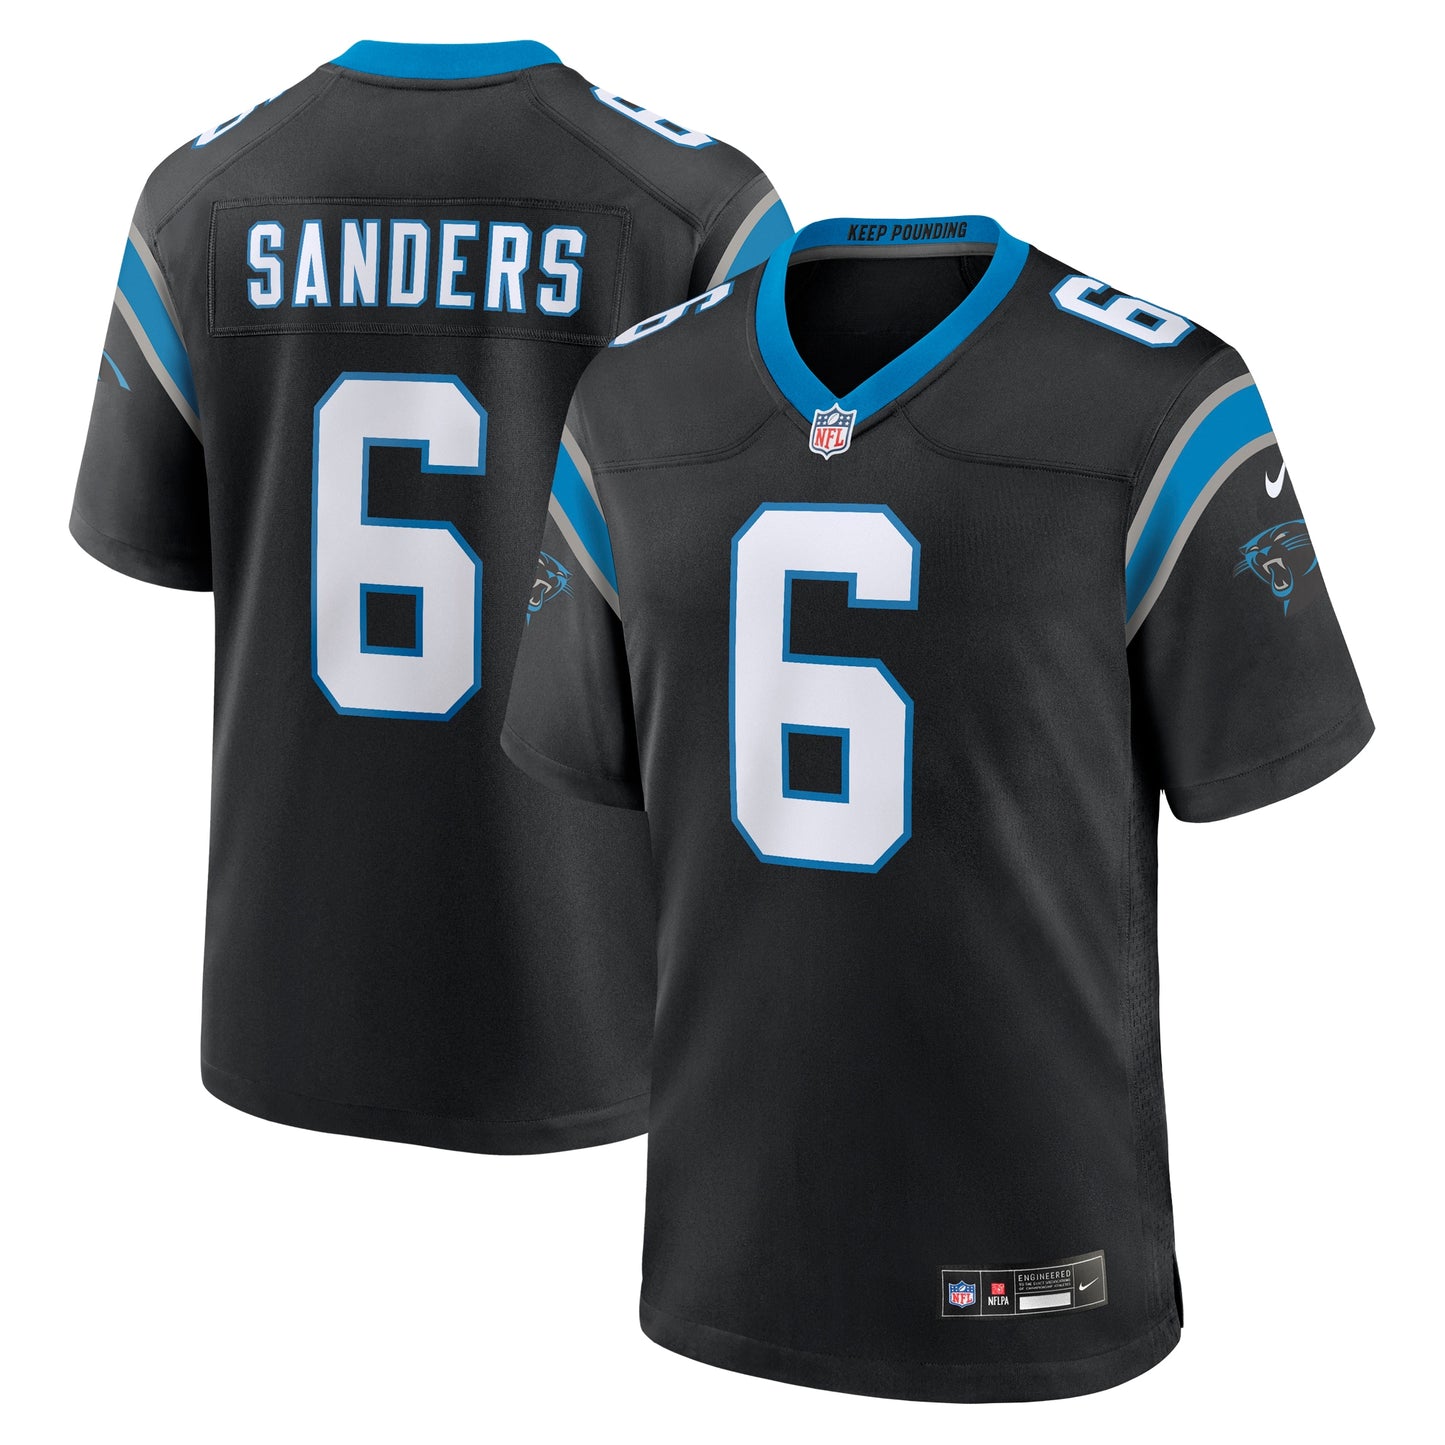 Miles Sanders Carolina Panthers Nike Game Player Jersey - Black